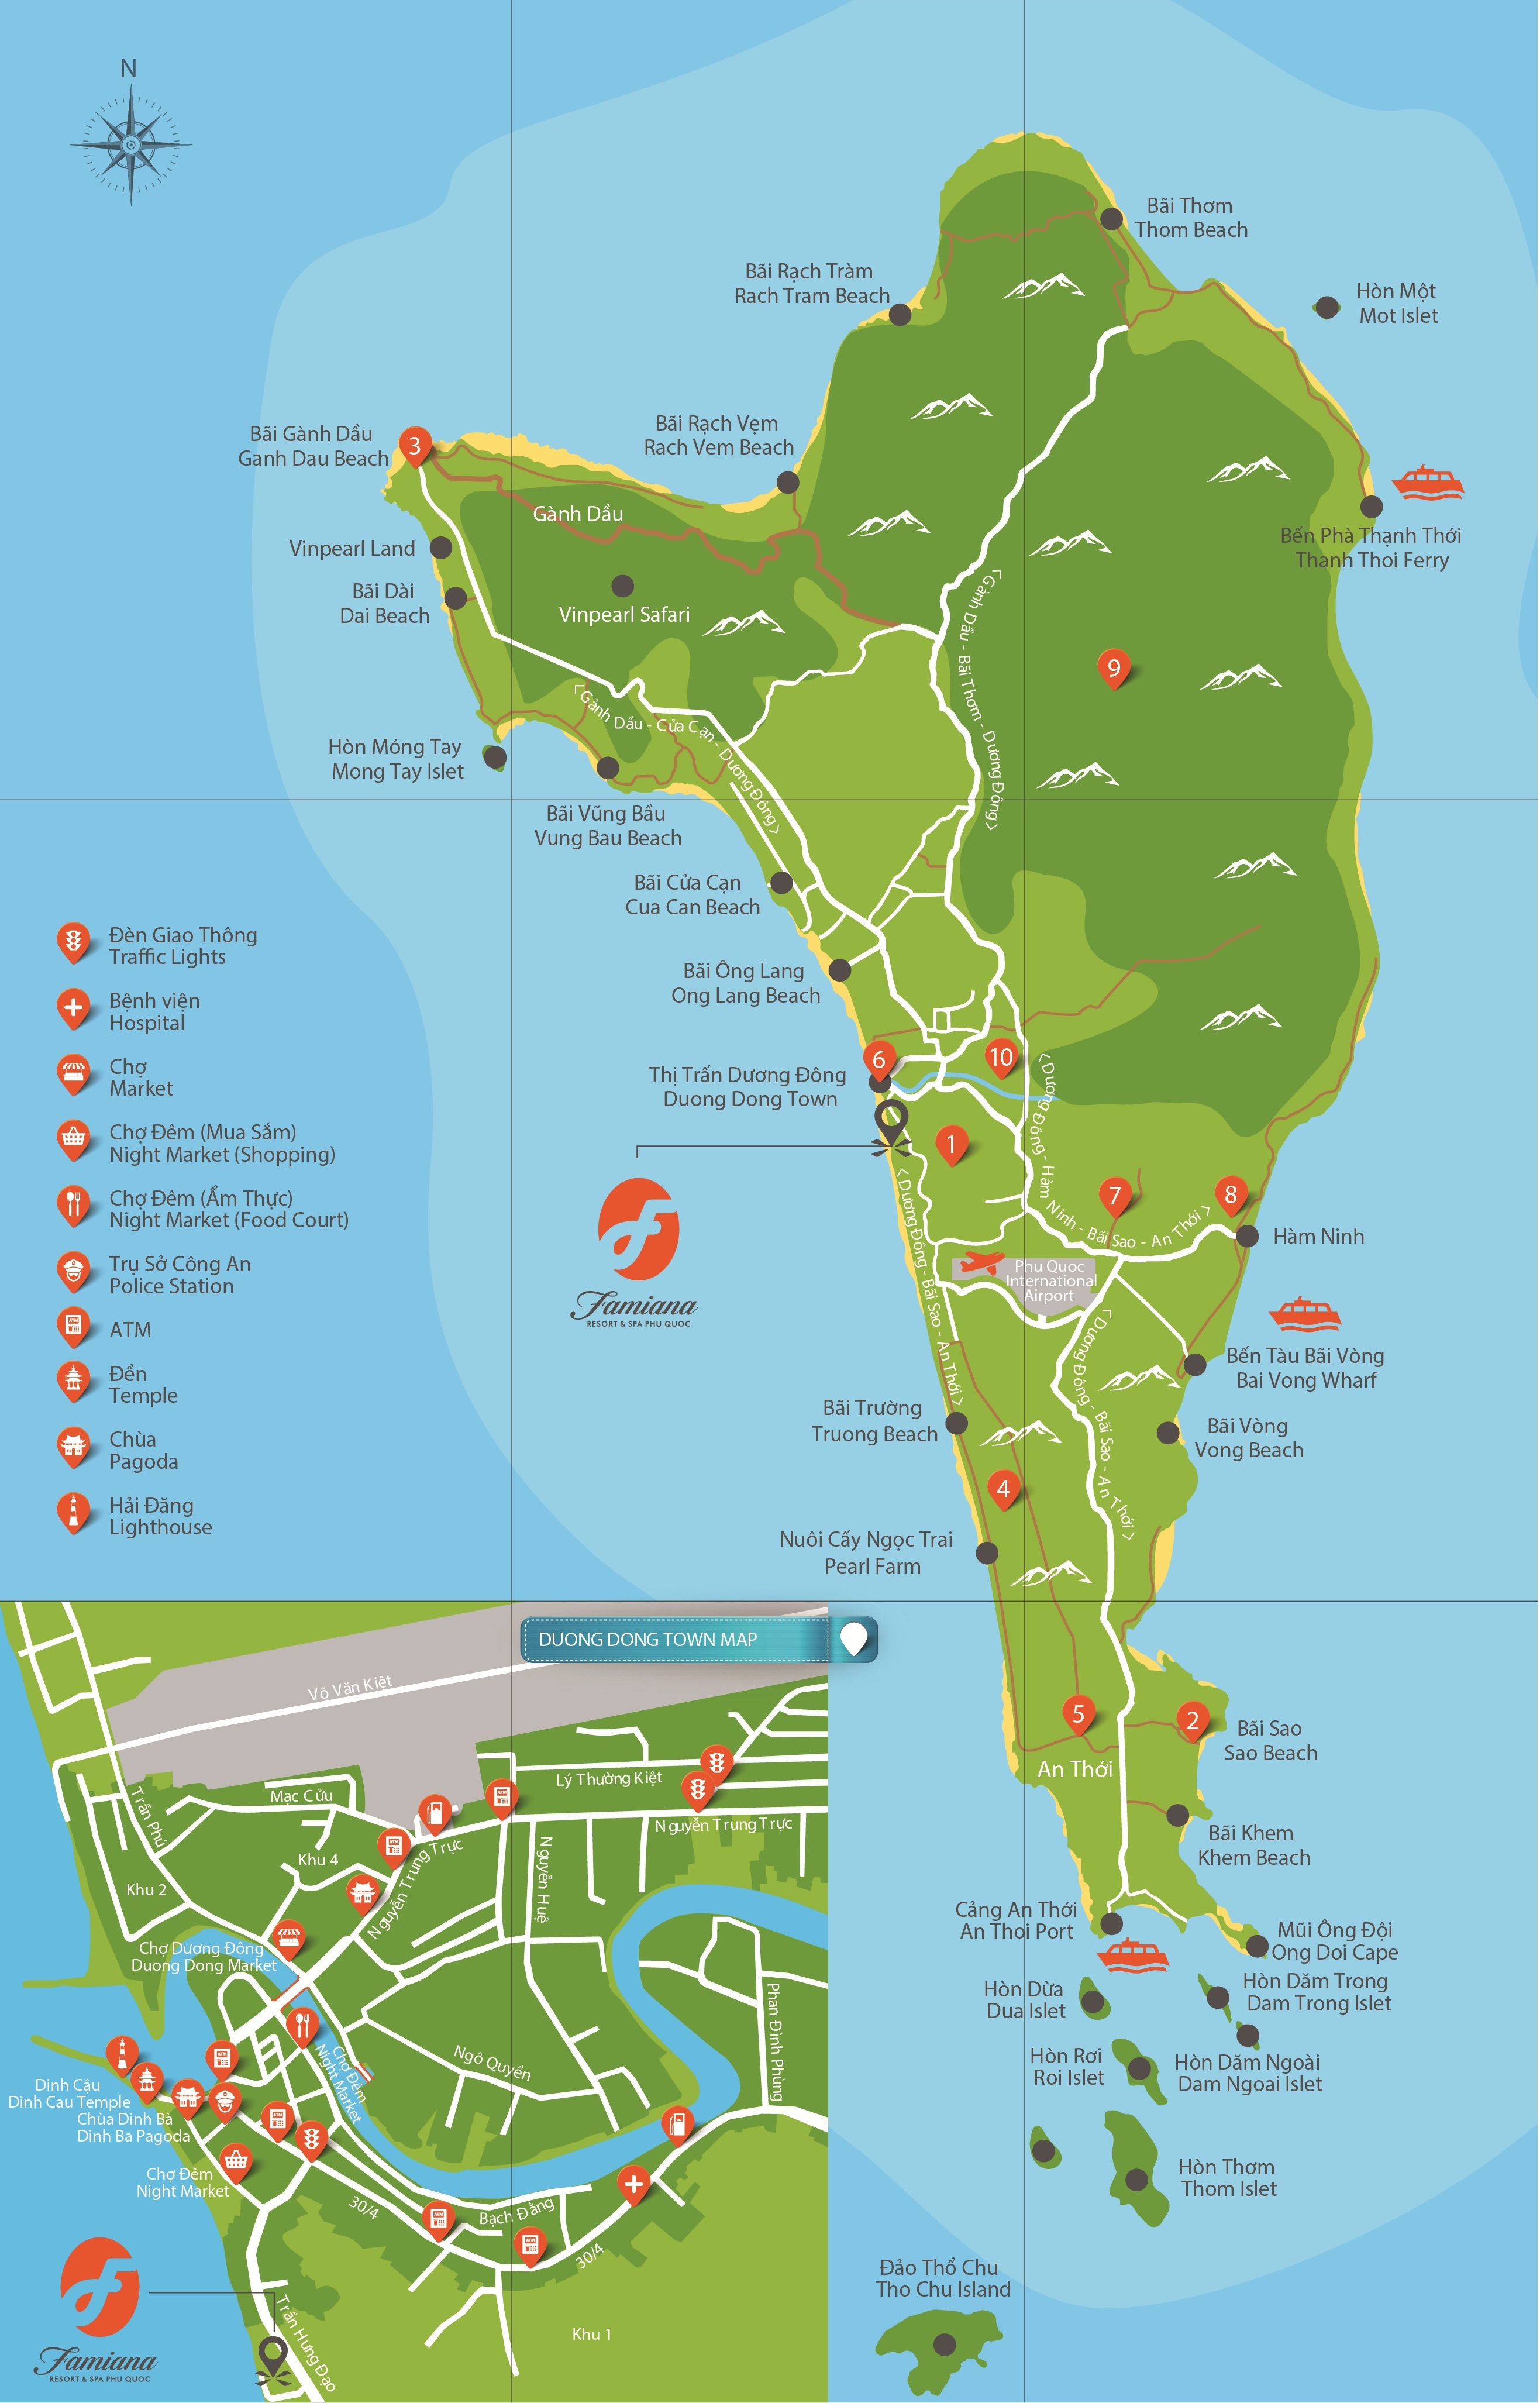 Bản đồ du lịch Thành phố Phú Quốc năm 2024:
Năm 2024, thành phố Phú Quốc đã phát triển mạnh về du lịch. Với bản đồ du lịch mới nhất này, các bạn sẽ được khám phá những điểm đến hấp dẫn nhất, những dịch vụ tiện ích, từ khách sạn, nhà hàng đến các hoạt động trải nghiệm mới lạ nhất.